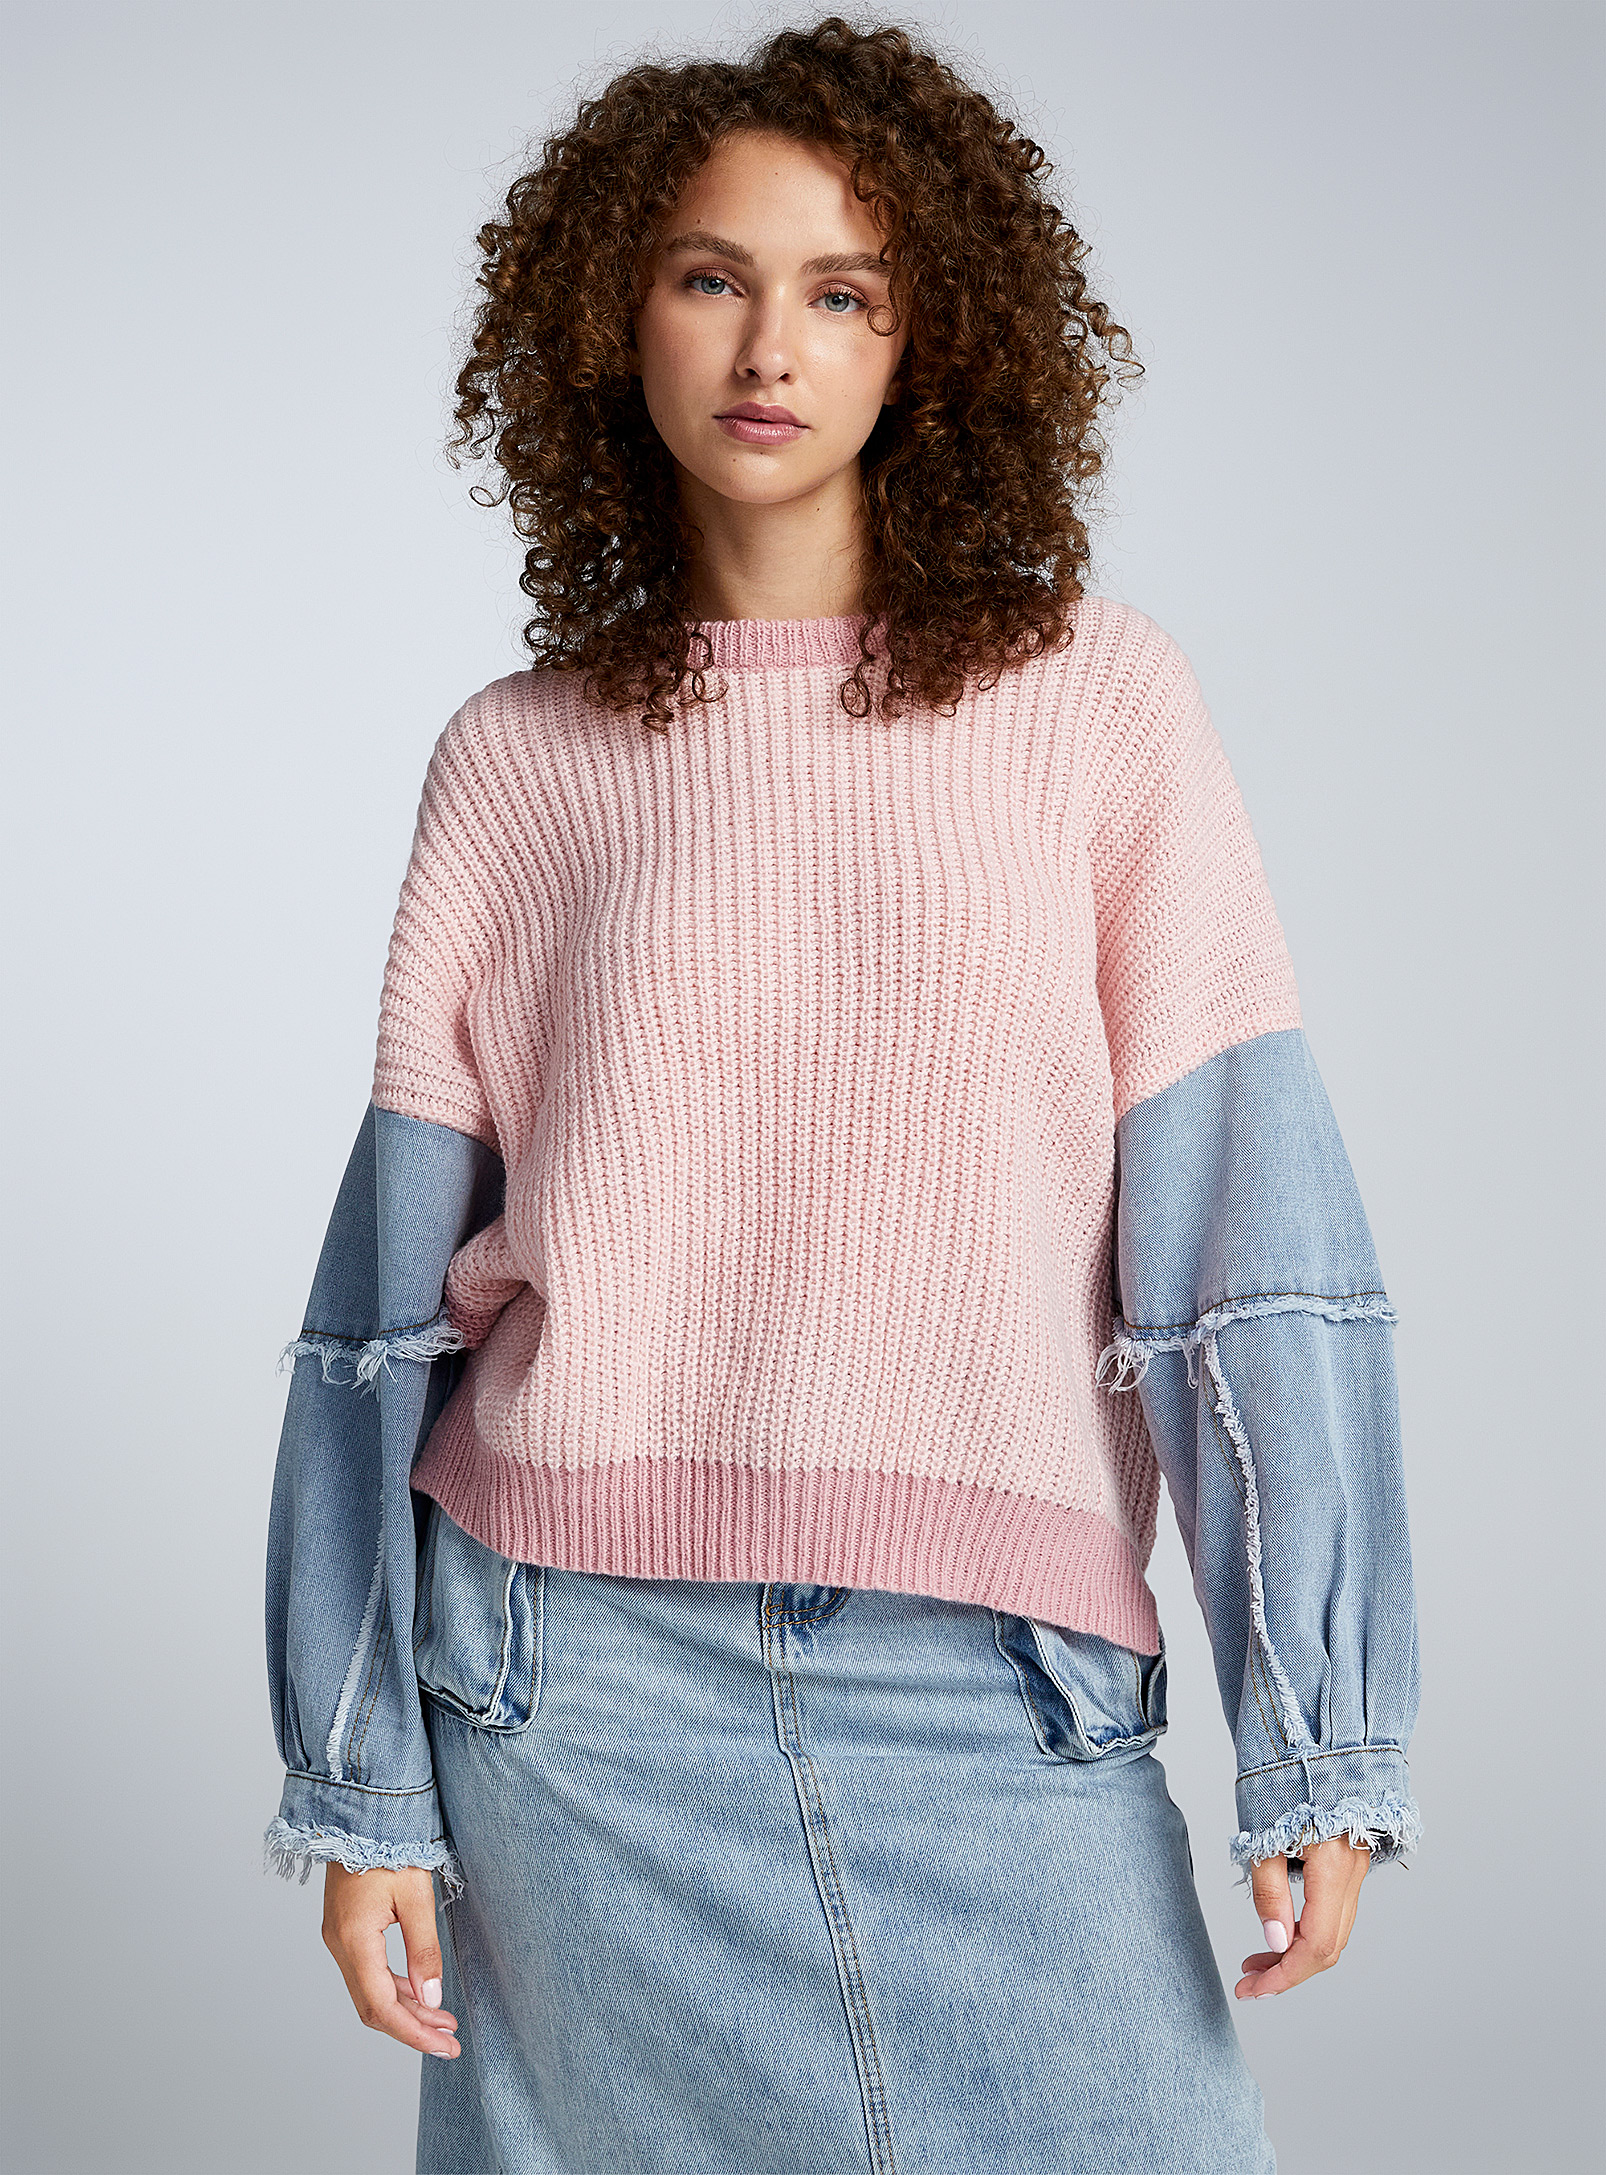 Twik - Women's Denim sleeves two-tone knit sweater